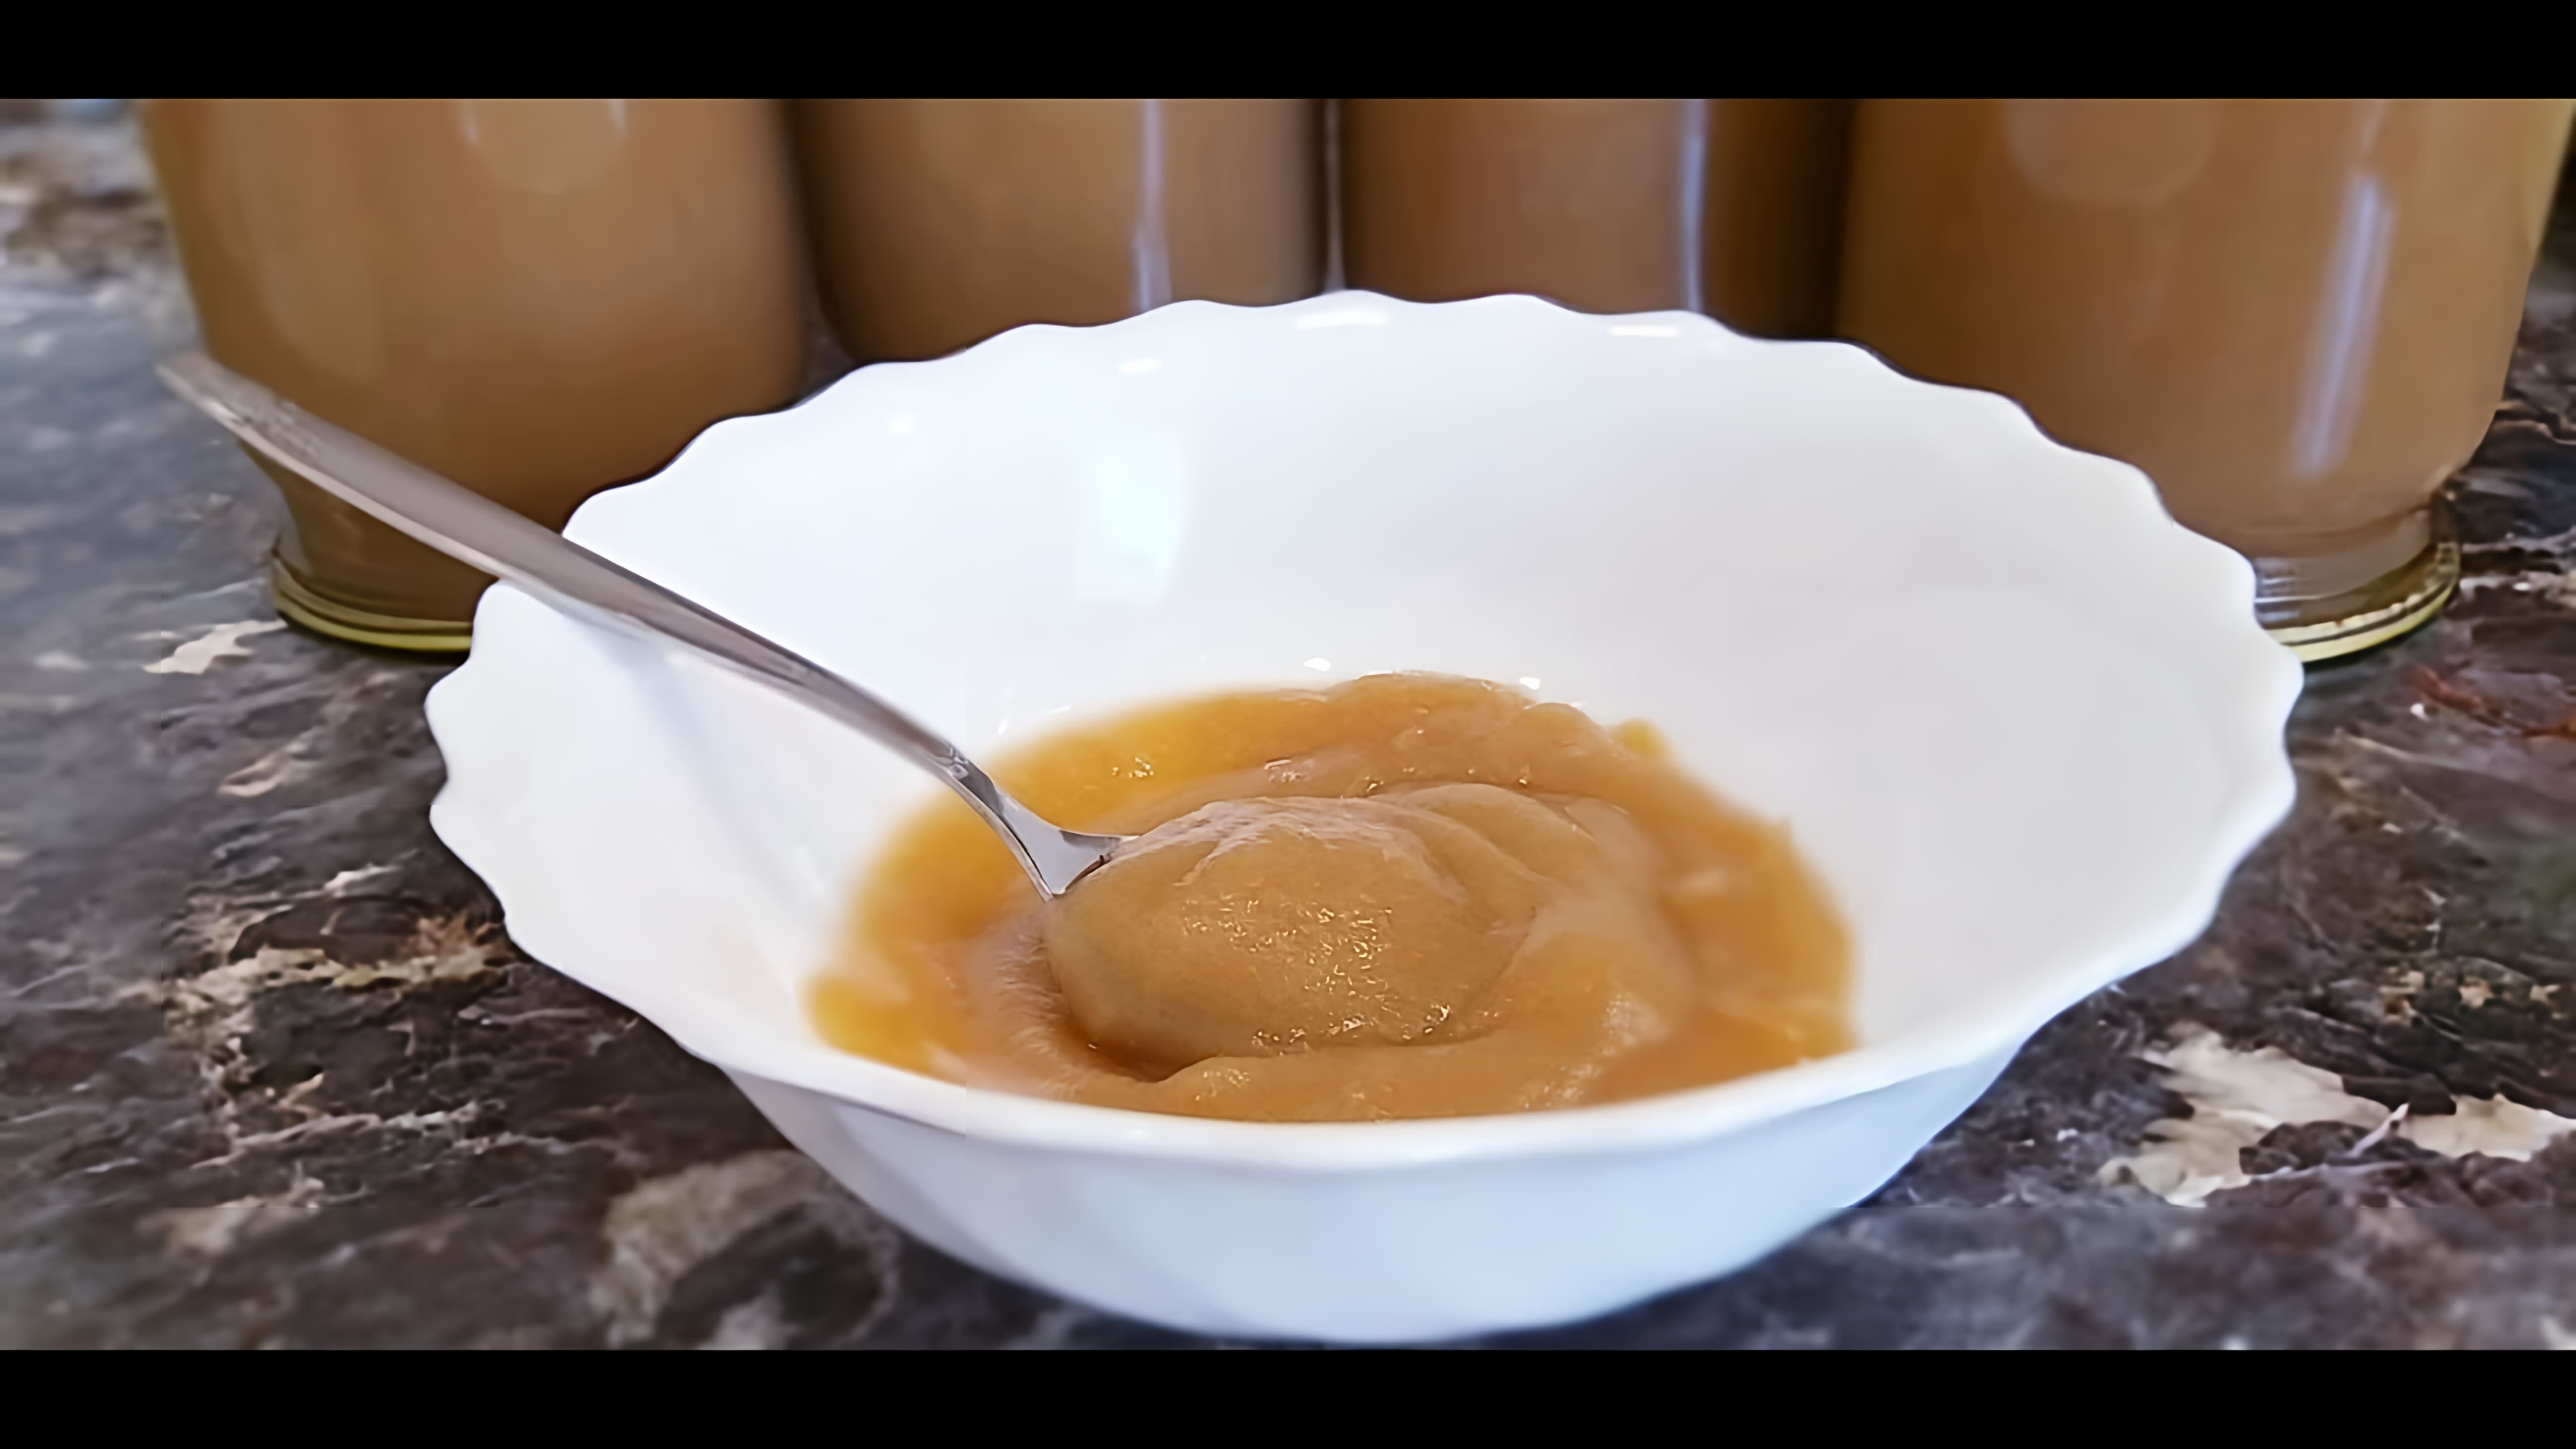 В этом видео демонстрируется процесс приготовления яблочного пюре "Неженка" в домашних условиях